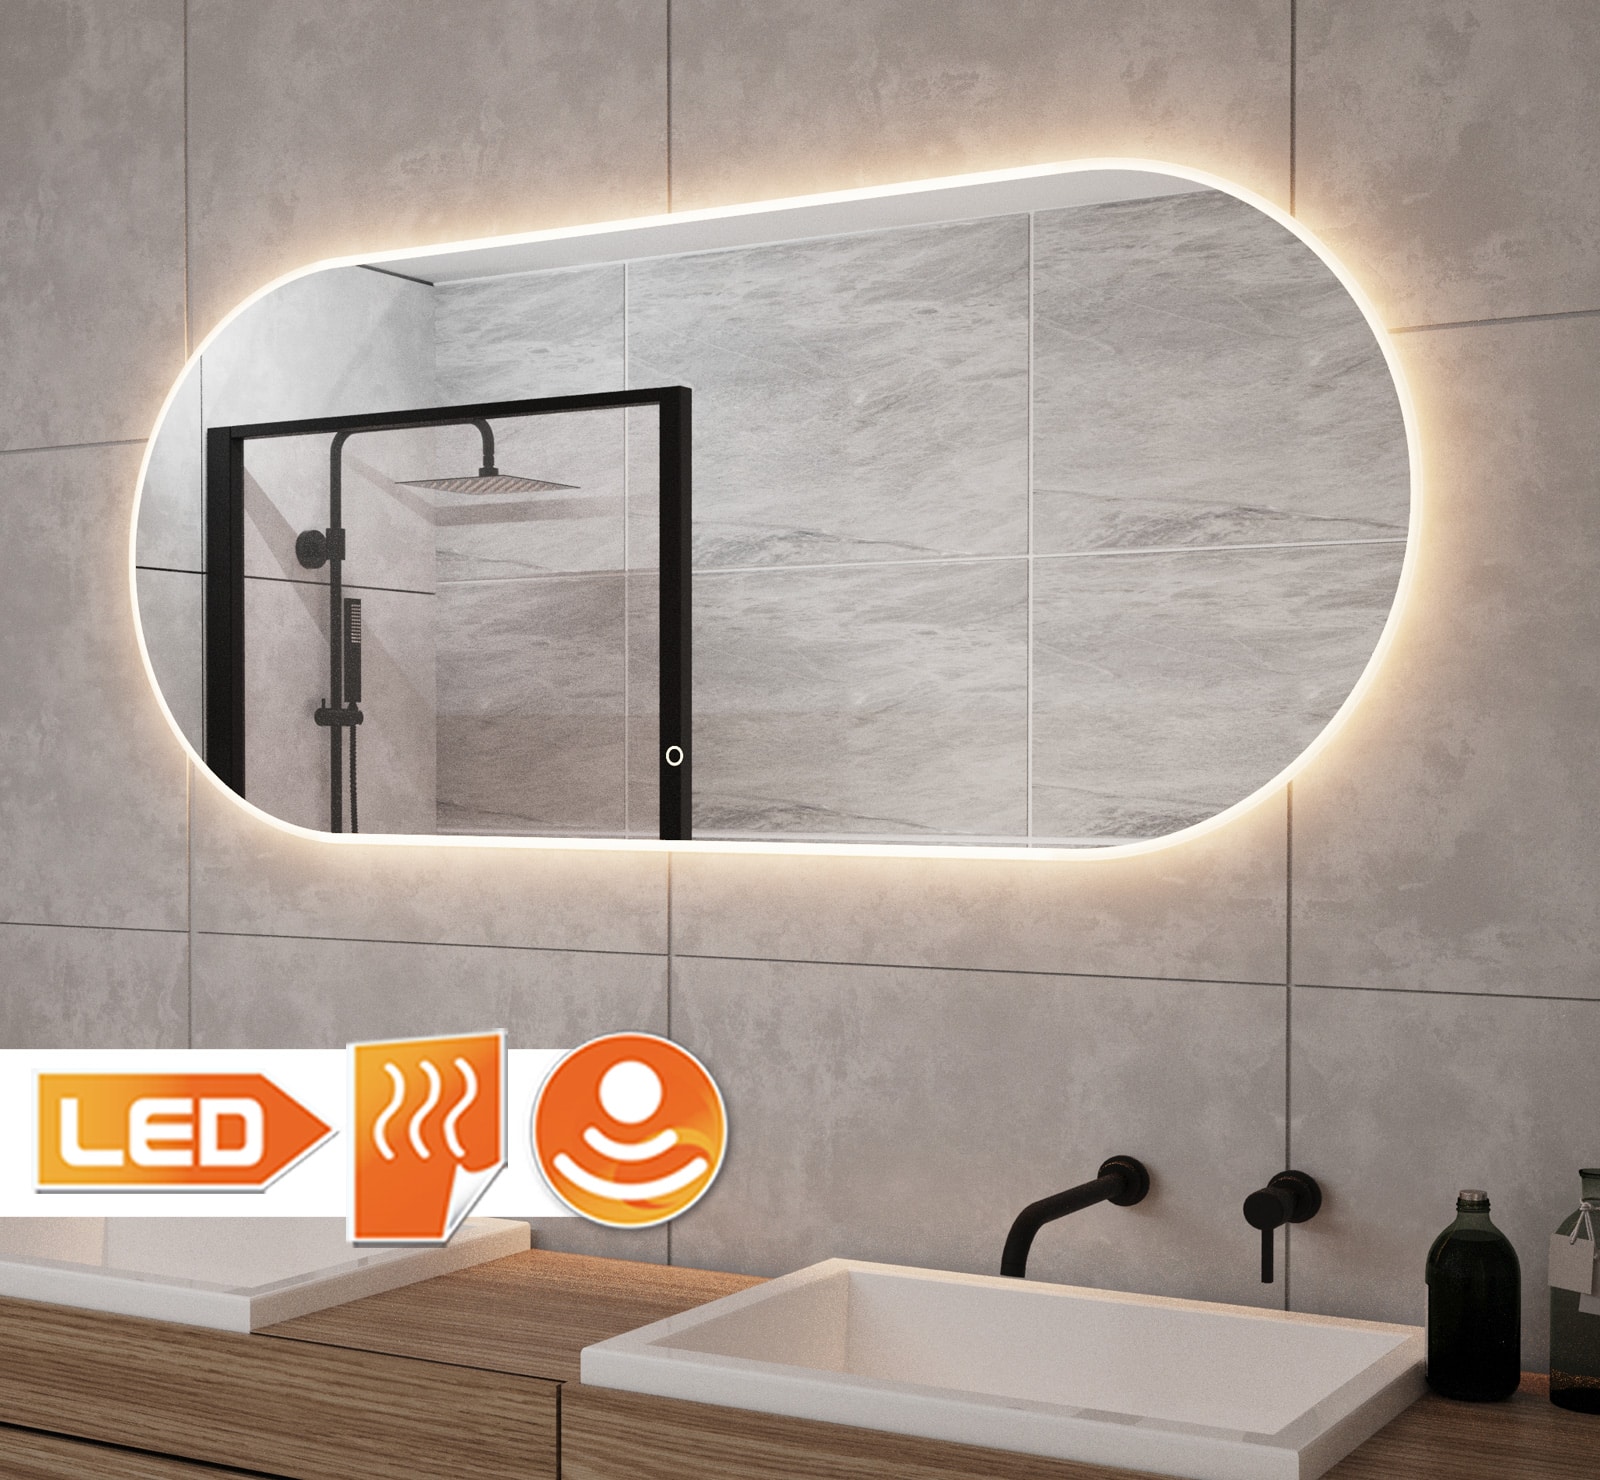 Indica bescherming Dijk Ovalen badkamerspiegel met LED verlichting, verwarming, touch sensor en  dimfunctie 140x60 cm - Designspiegels